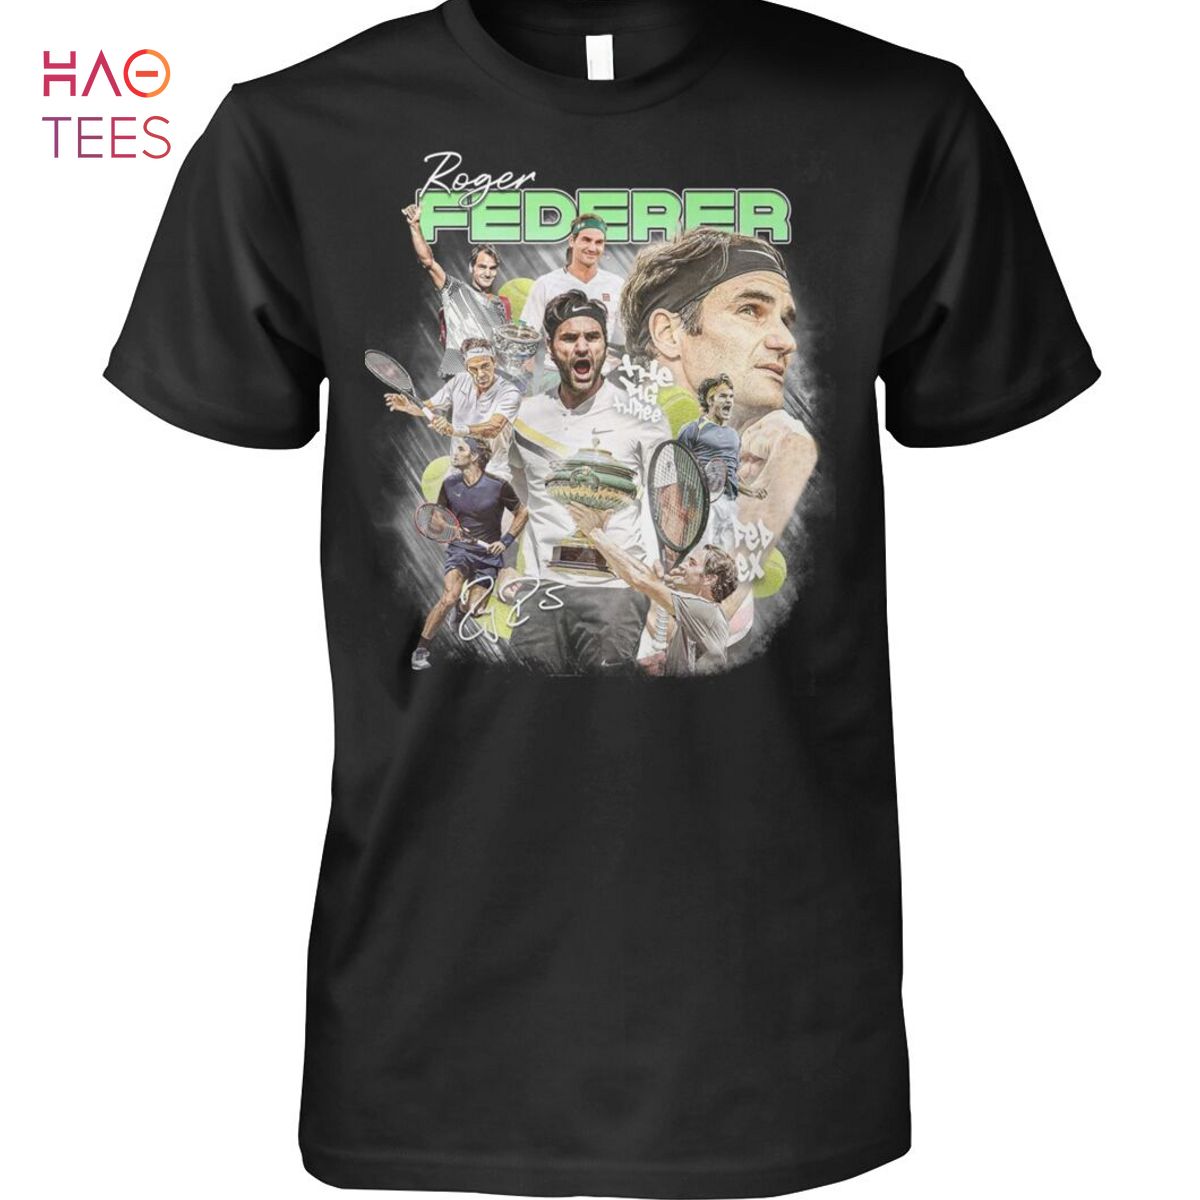 Roger Federer Tennis Player T Shirt Unisex